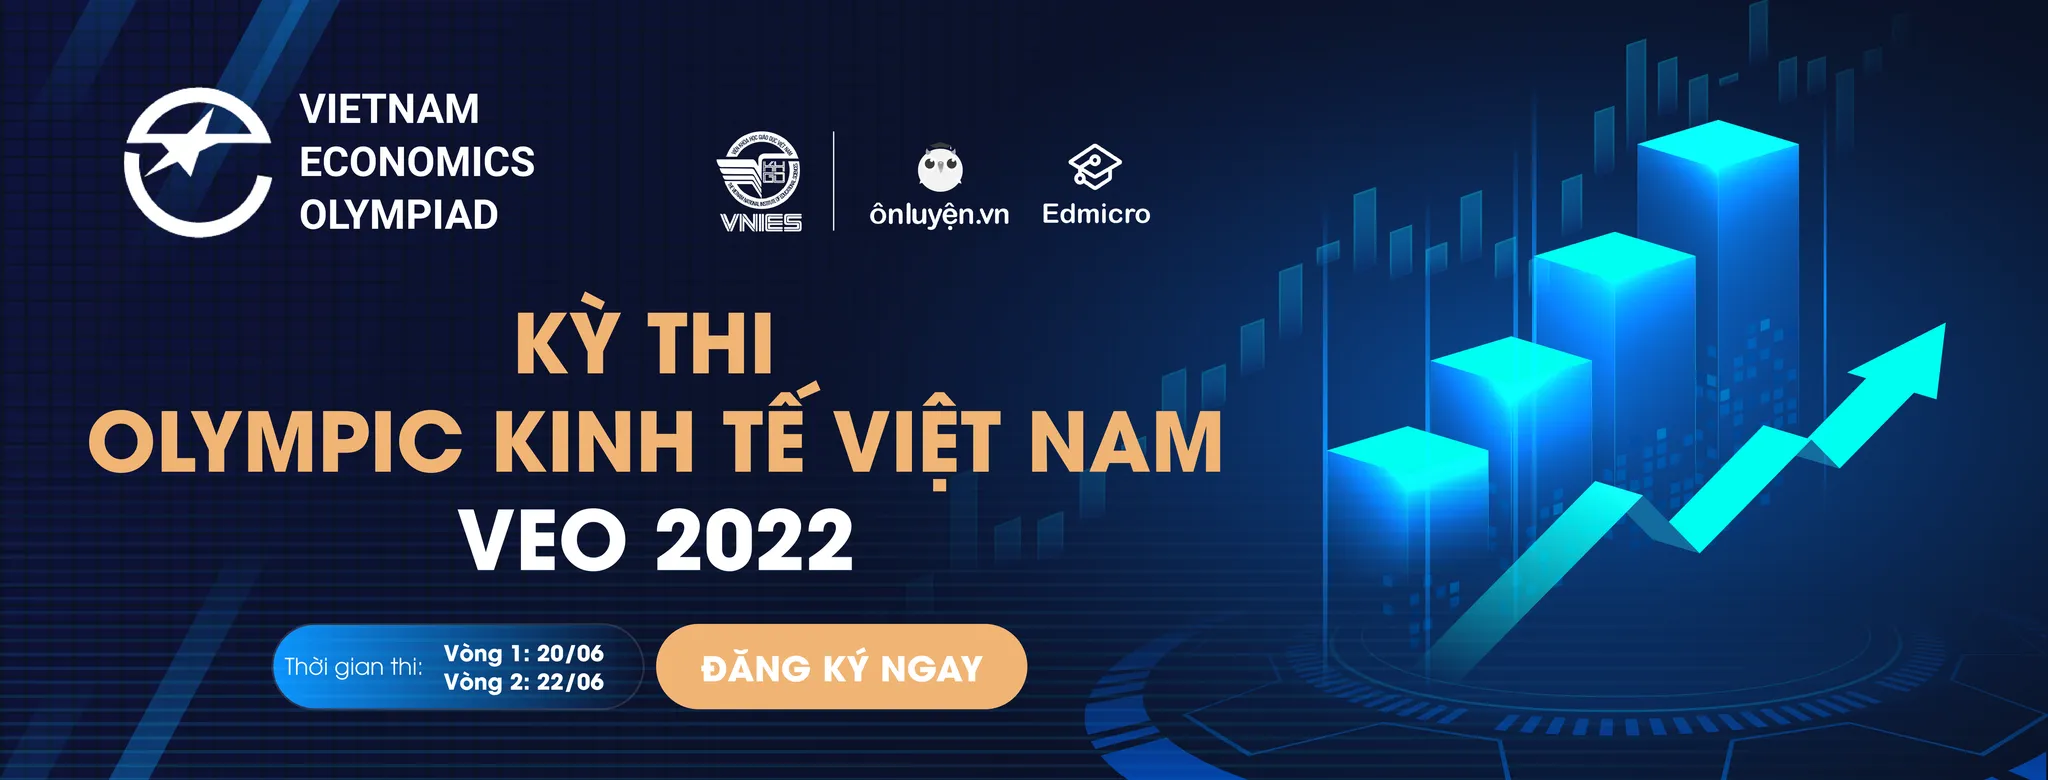 Chính thức phát động Kỳ thi Olympic Kinh tế Việt Nam – VEO 2022